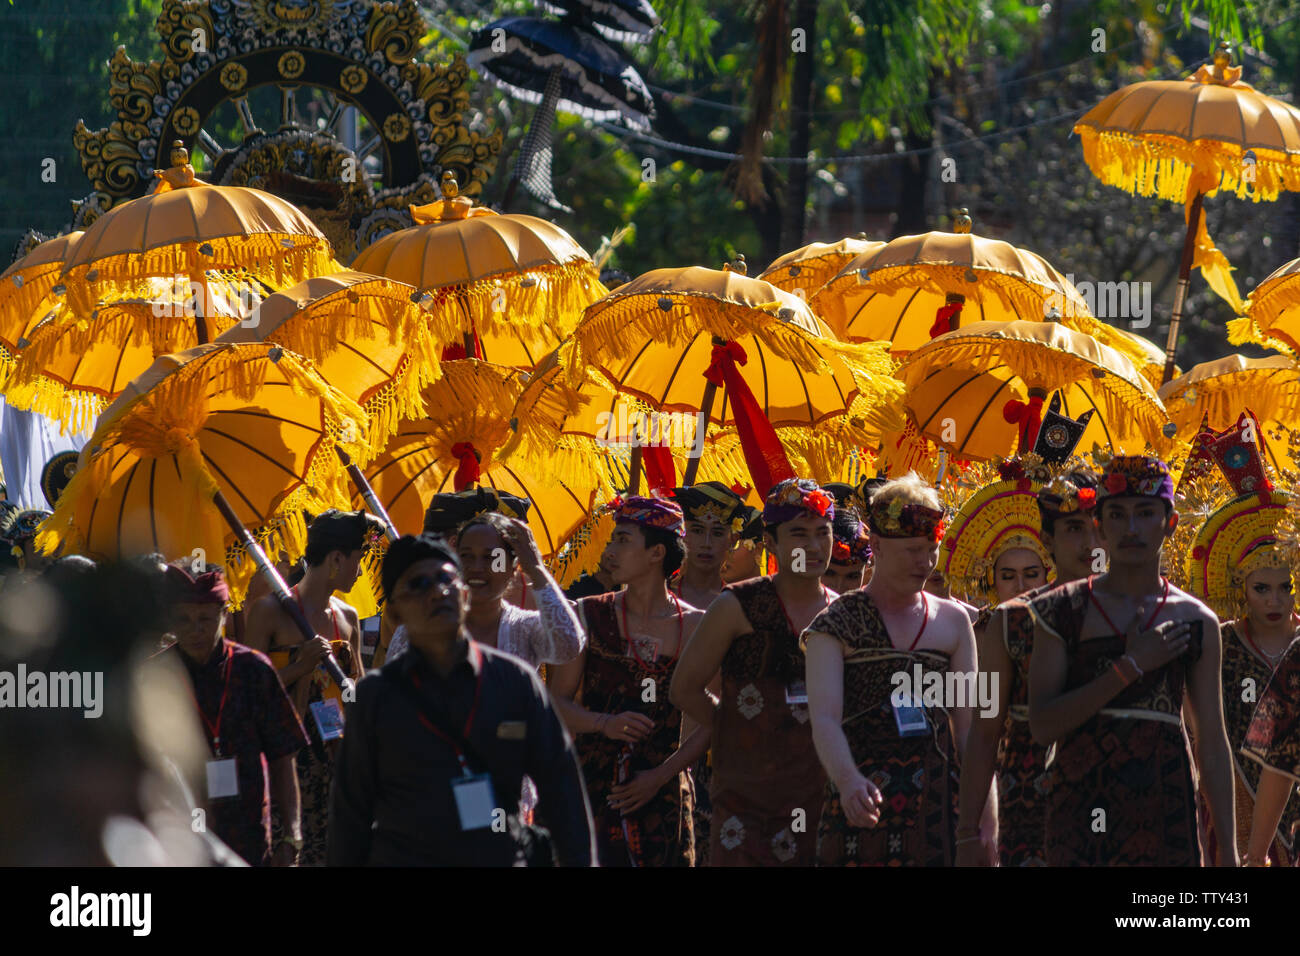 DENPASAR/INDONESIEN - 15. JUNI 2019: Gruppe der Balinesische Tänzerin in ethnischen Kostüme mit traditionellen bunten Schirme am hinduistischen Zeremonie Parade während Templ Stockfoto